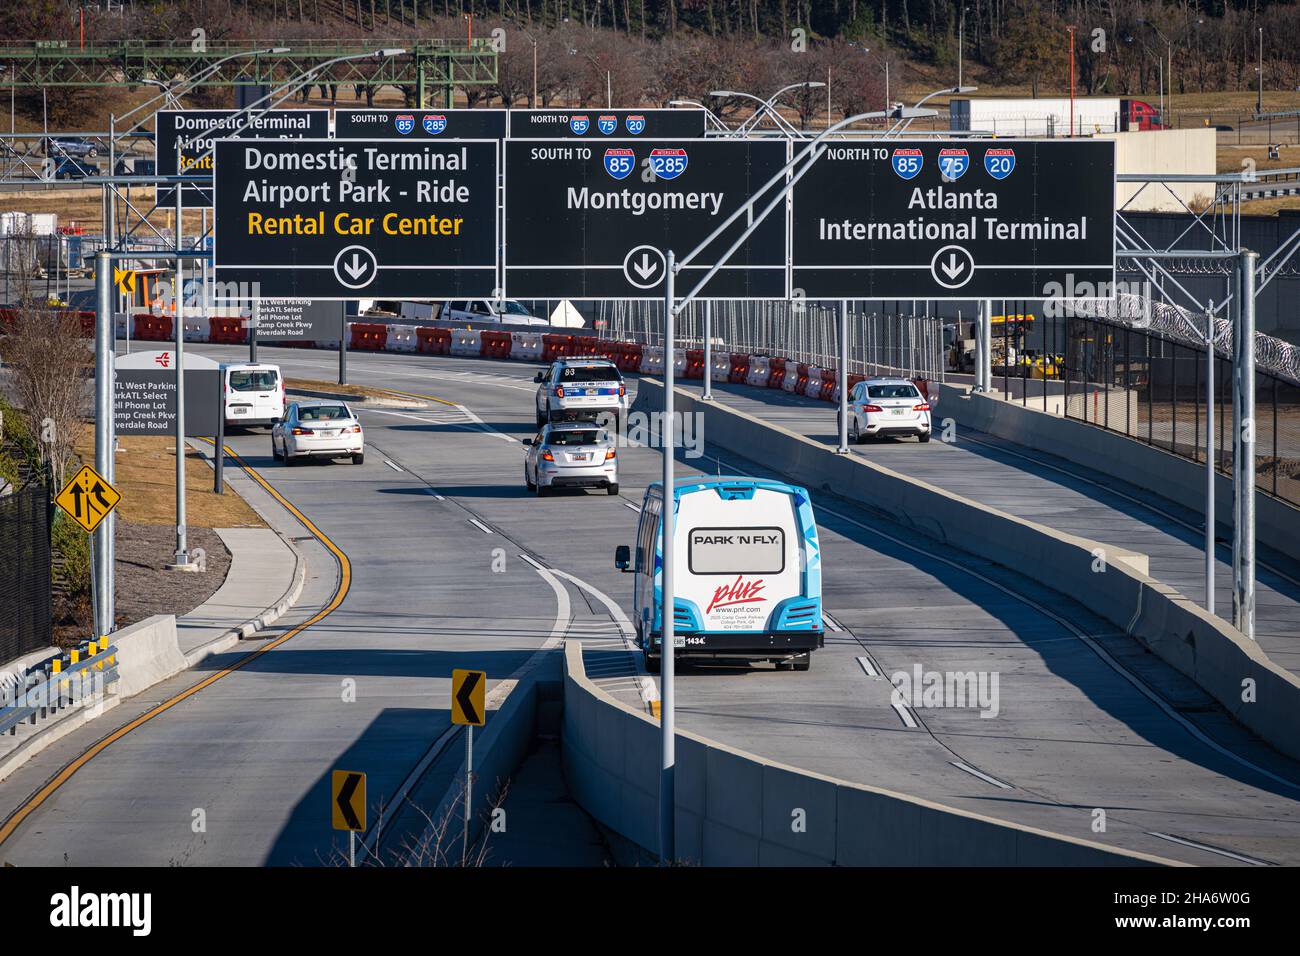 Indicazioni stradali per l'aeroporto internazionale Hartsfield-Jackson di Atlanta, l'aeroporto più trafficato del mondo, ad Atlanta, Georgia. (USA) Foto Stock